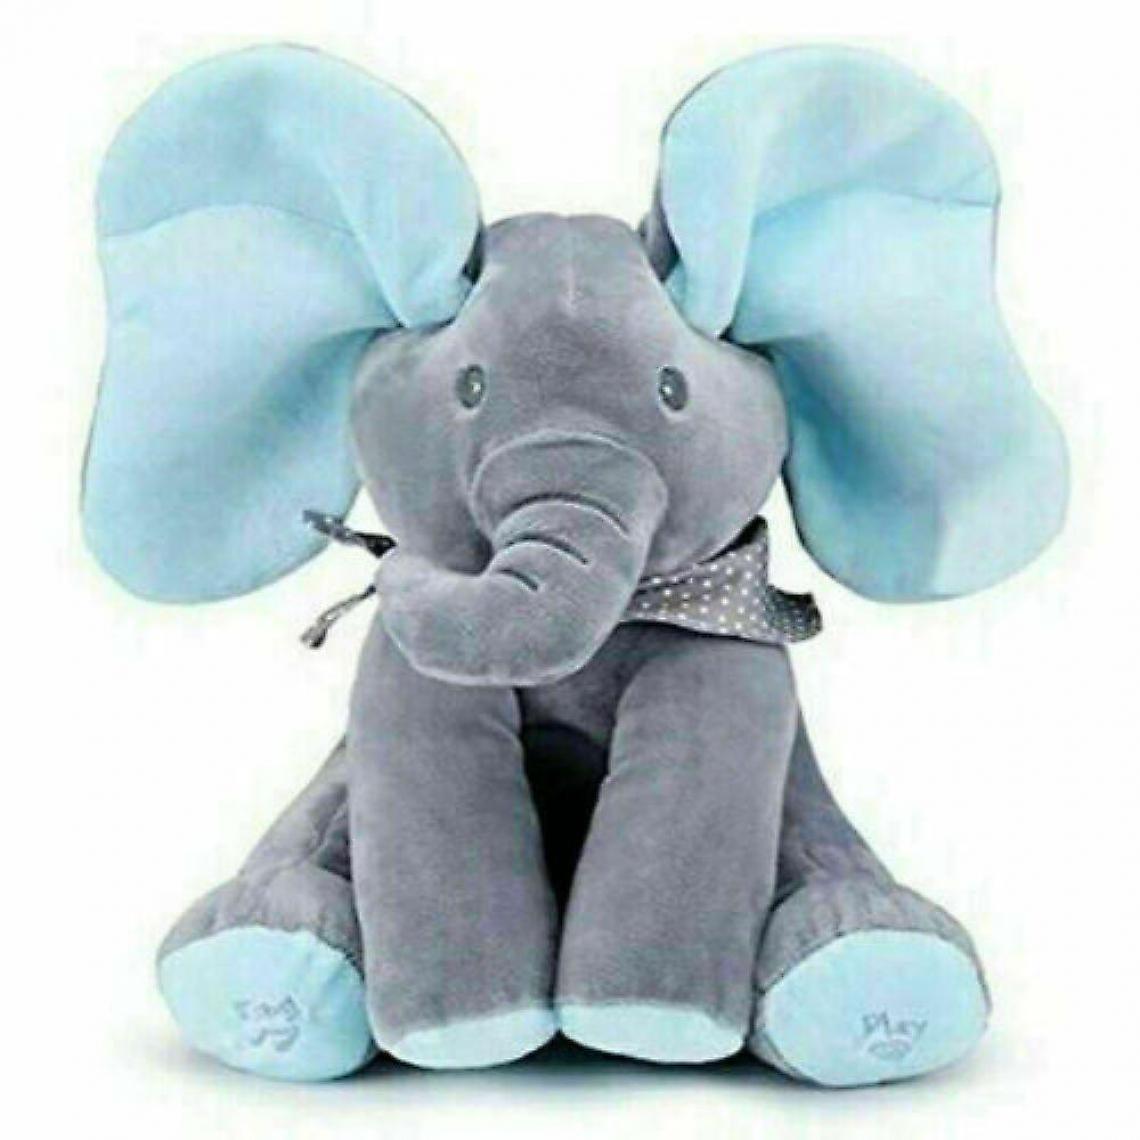 Universal - Musique éléphant peluche jouet peluche poupée chant bébé cadeau enfant (bleu) - Doudous